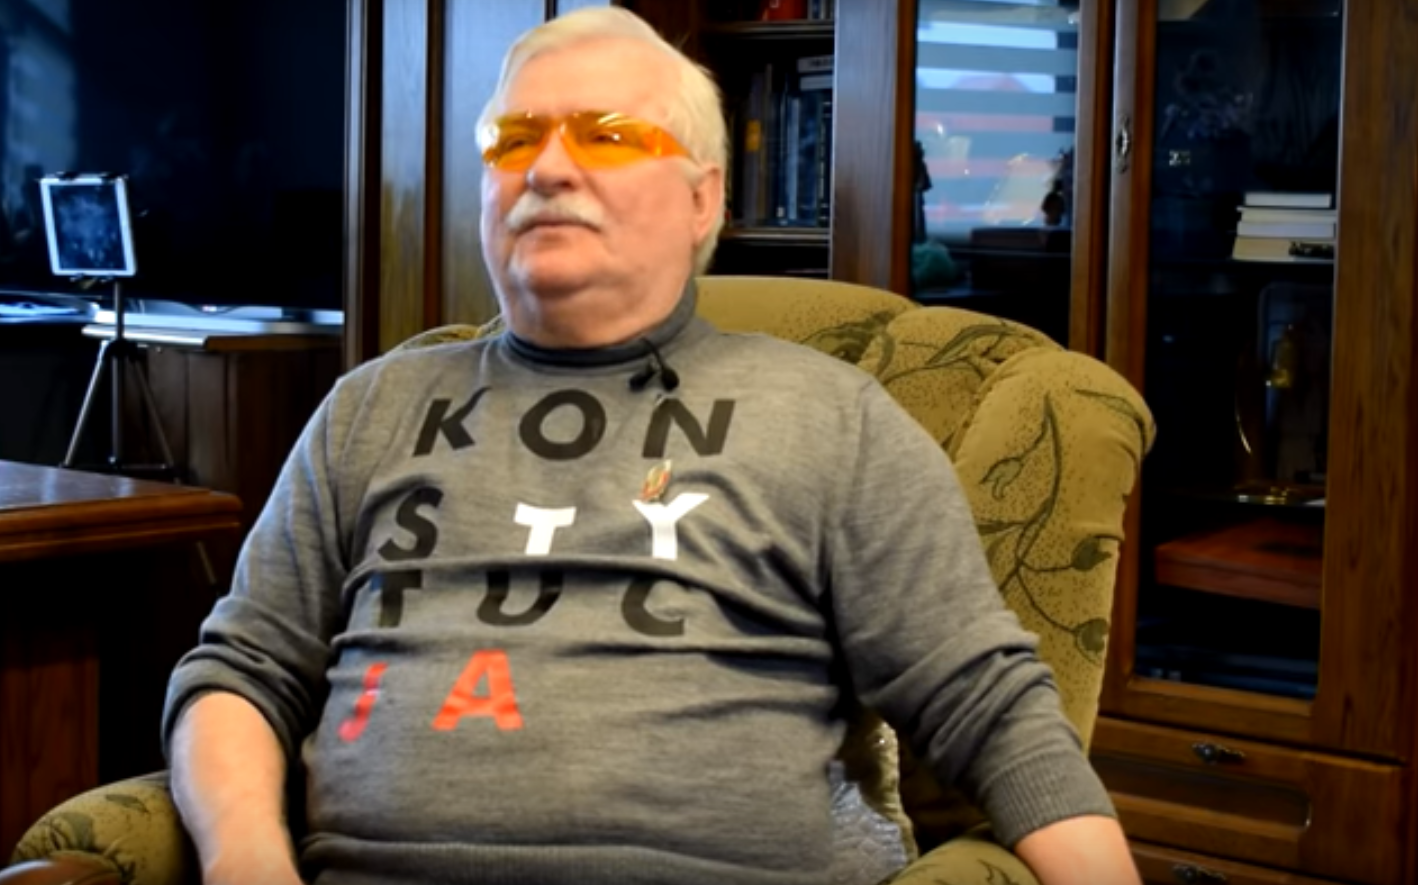 Według IPN i PiS Lech Wałęsa to TW Bolek. Na Twitter pozuje on z koszulką Real Madryt, użytkownicy pytają się o koszulkę z napisem konstytucja.